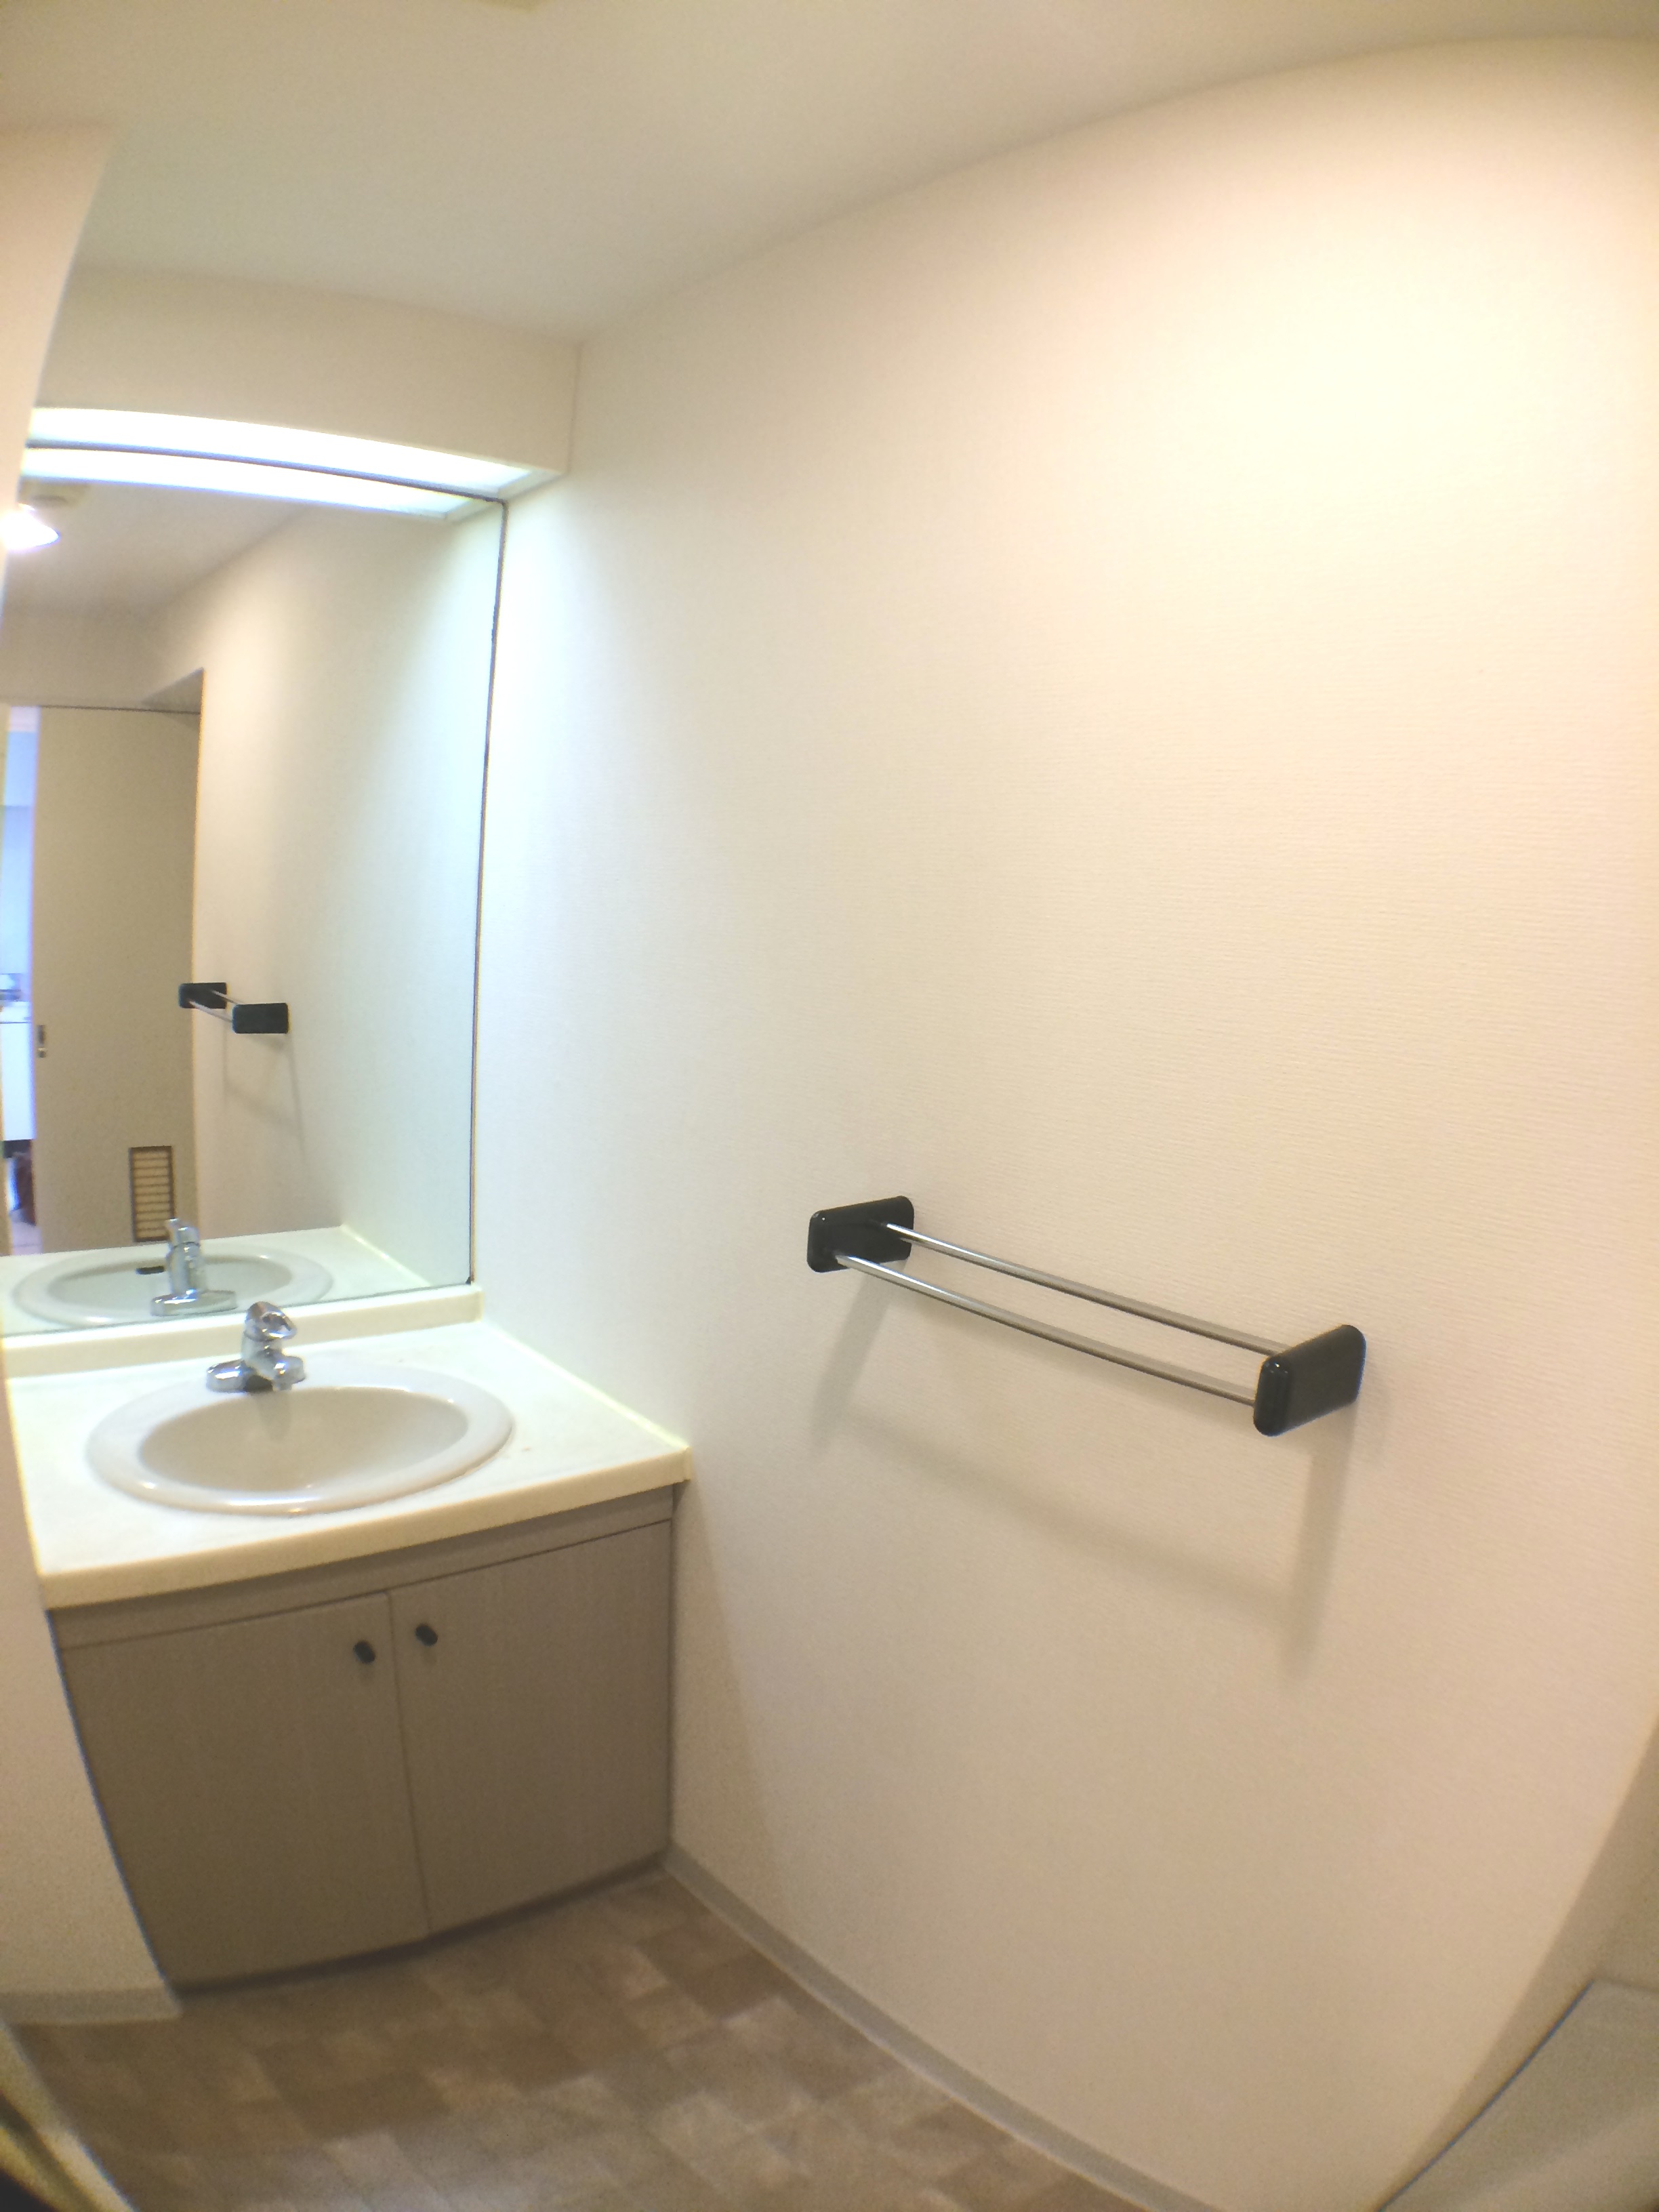 Washroom. A large mirror ・ Convenient storage rack